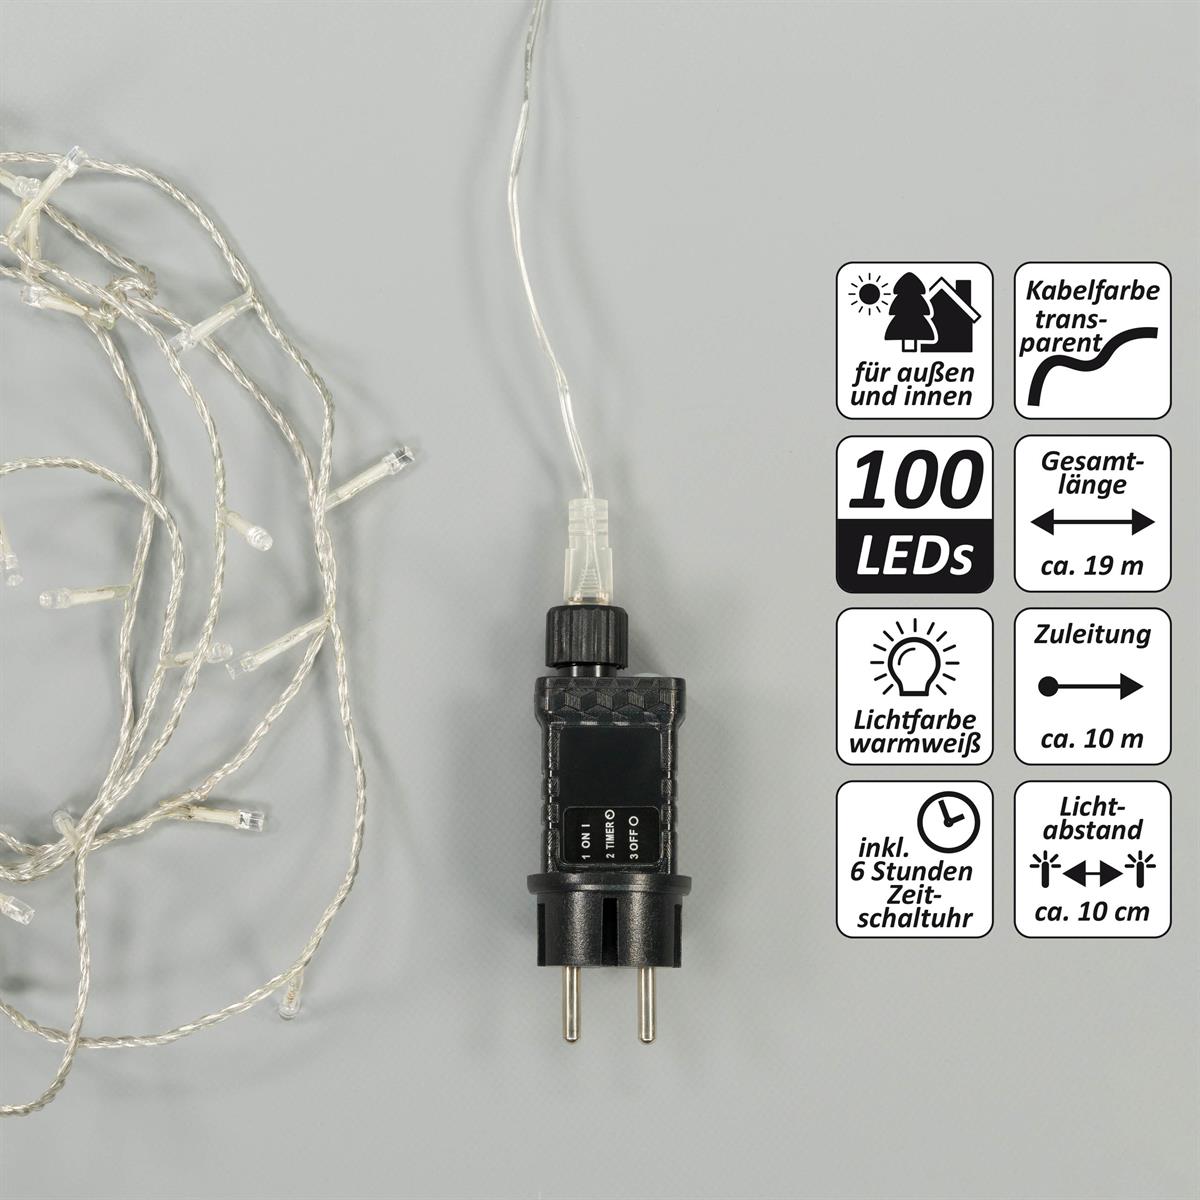 100 LED Lichterkette warmweiß Kabel transparent Innen Außen Trafo Timer